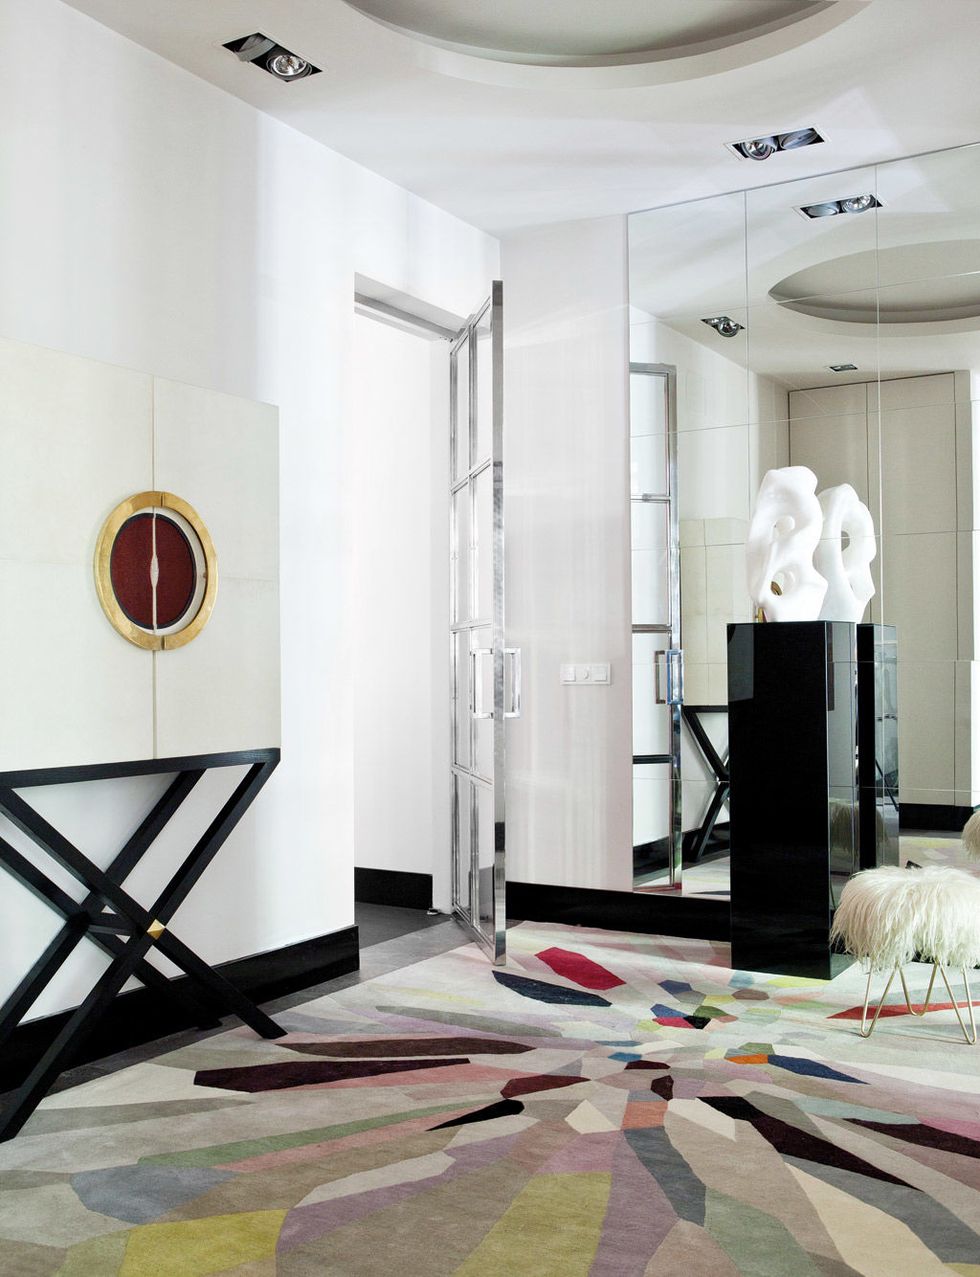 Arte en el recibidor: Escultura de Fernando Heras y mueble diseñado por Blanca Fabre